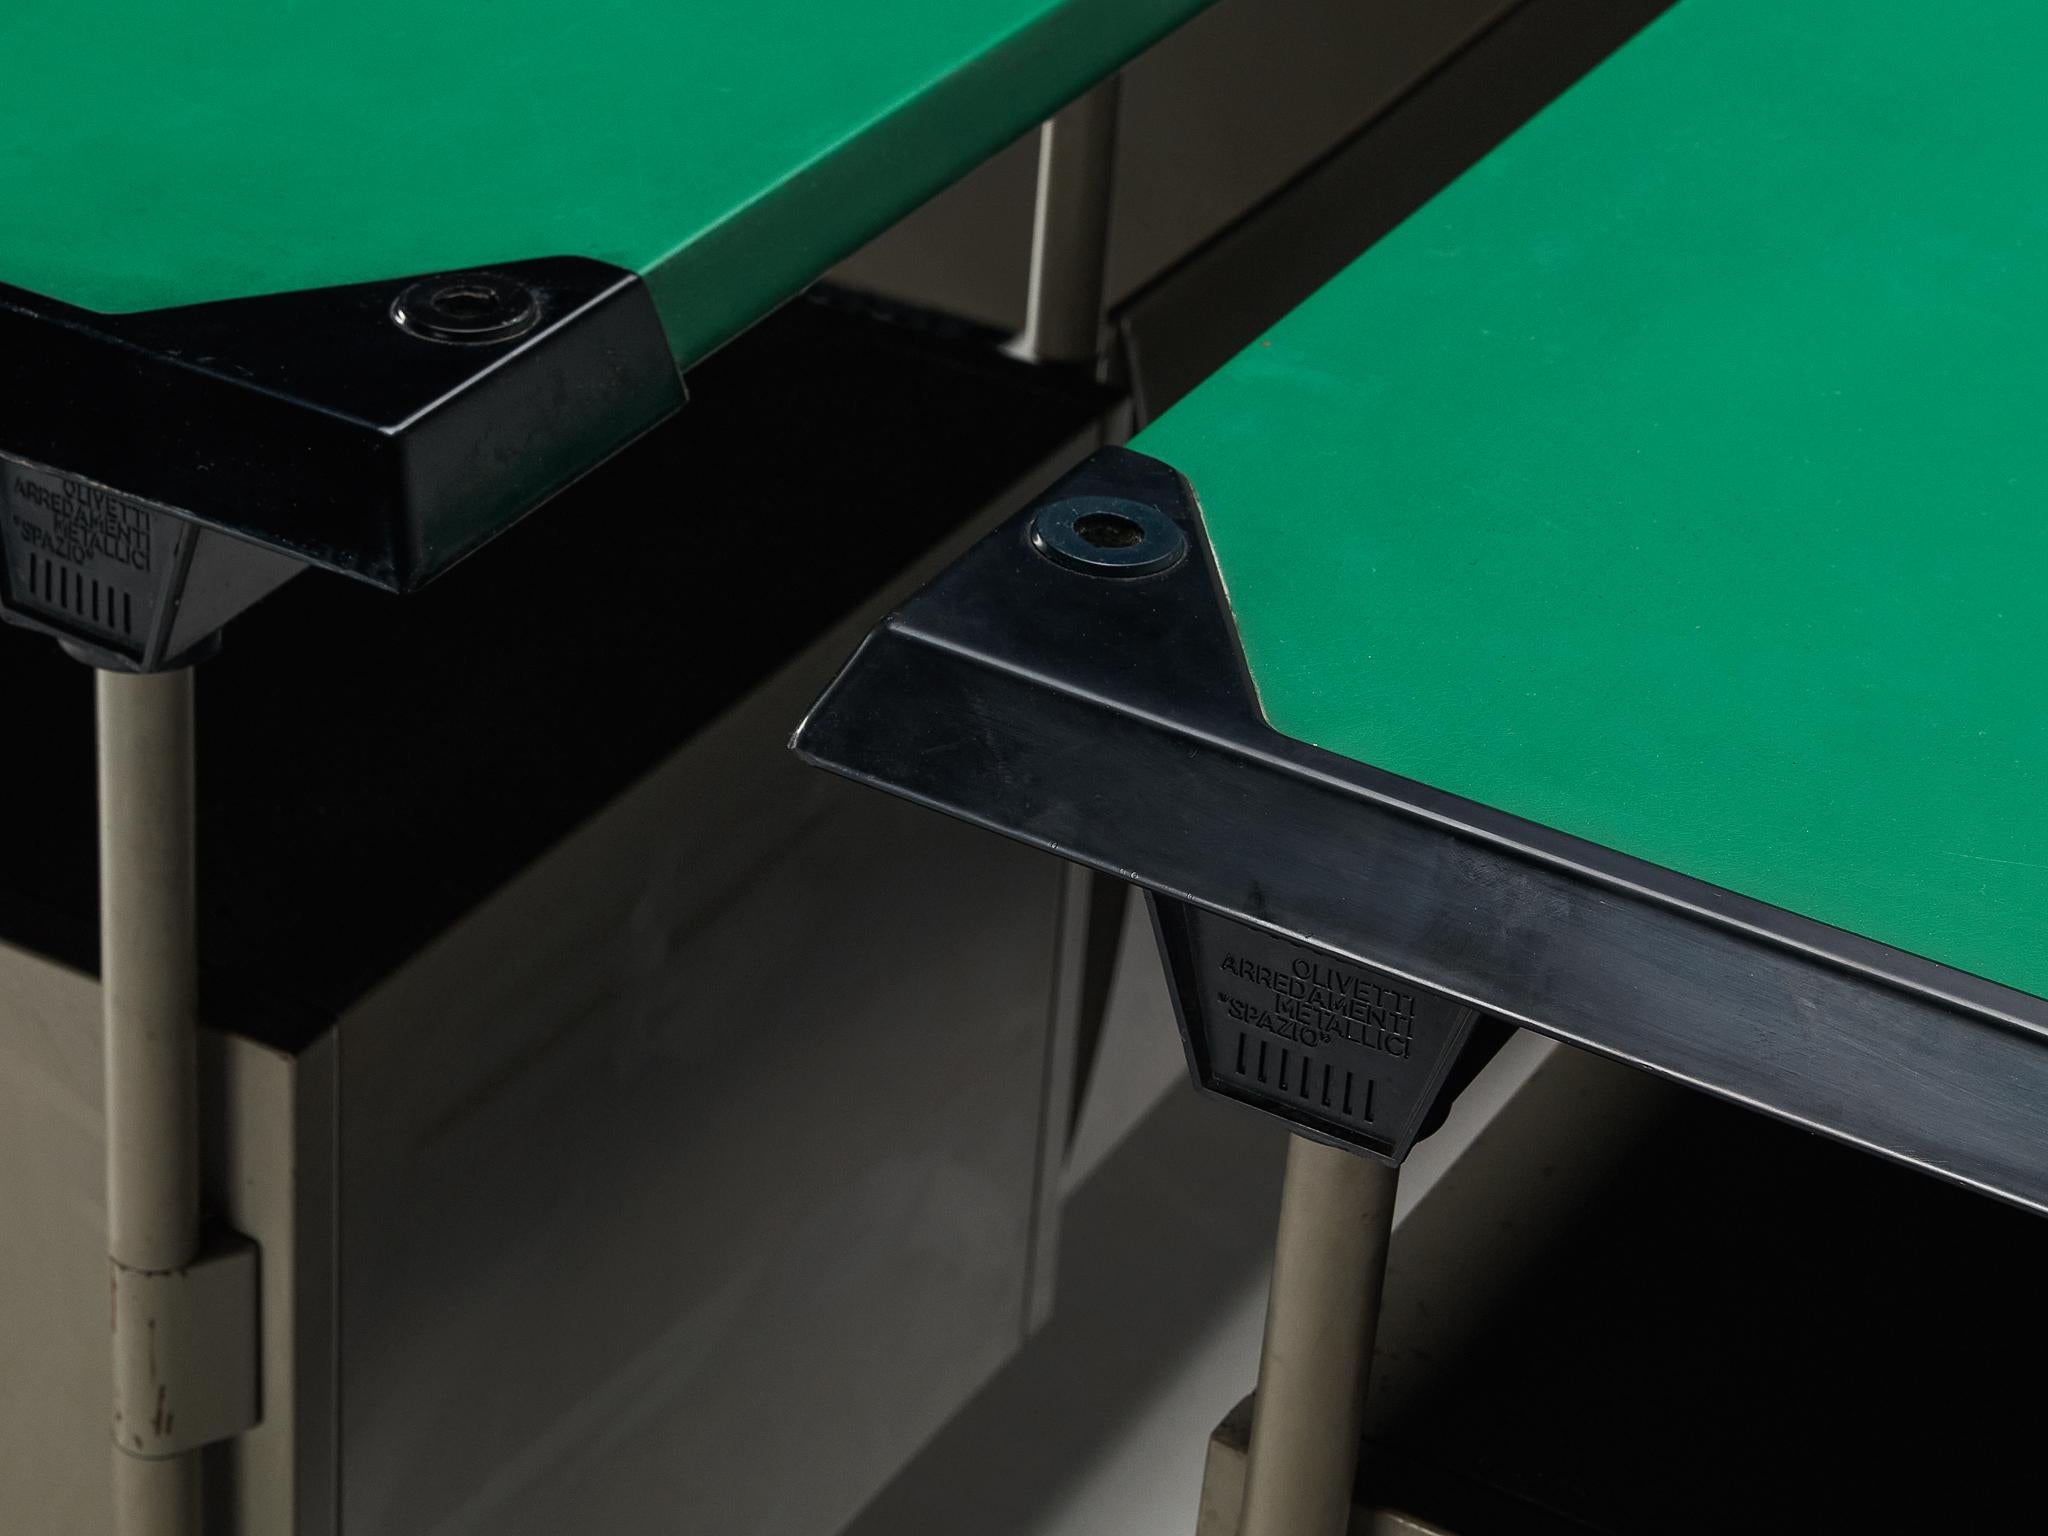 Studio BBPR for Olivetti 'Spazio' Desks in Grey Coated Steel